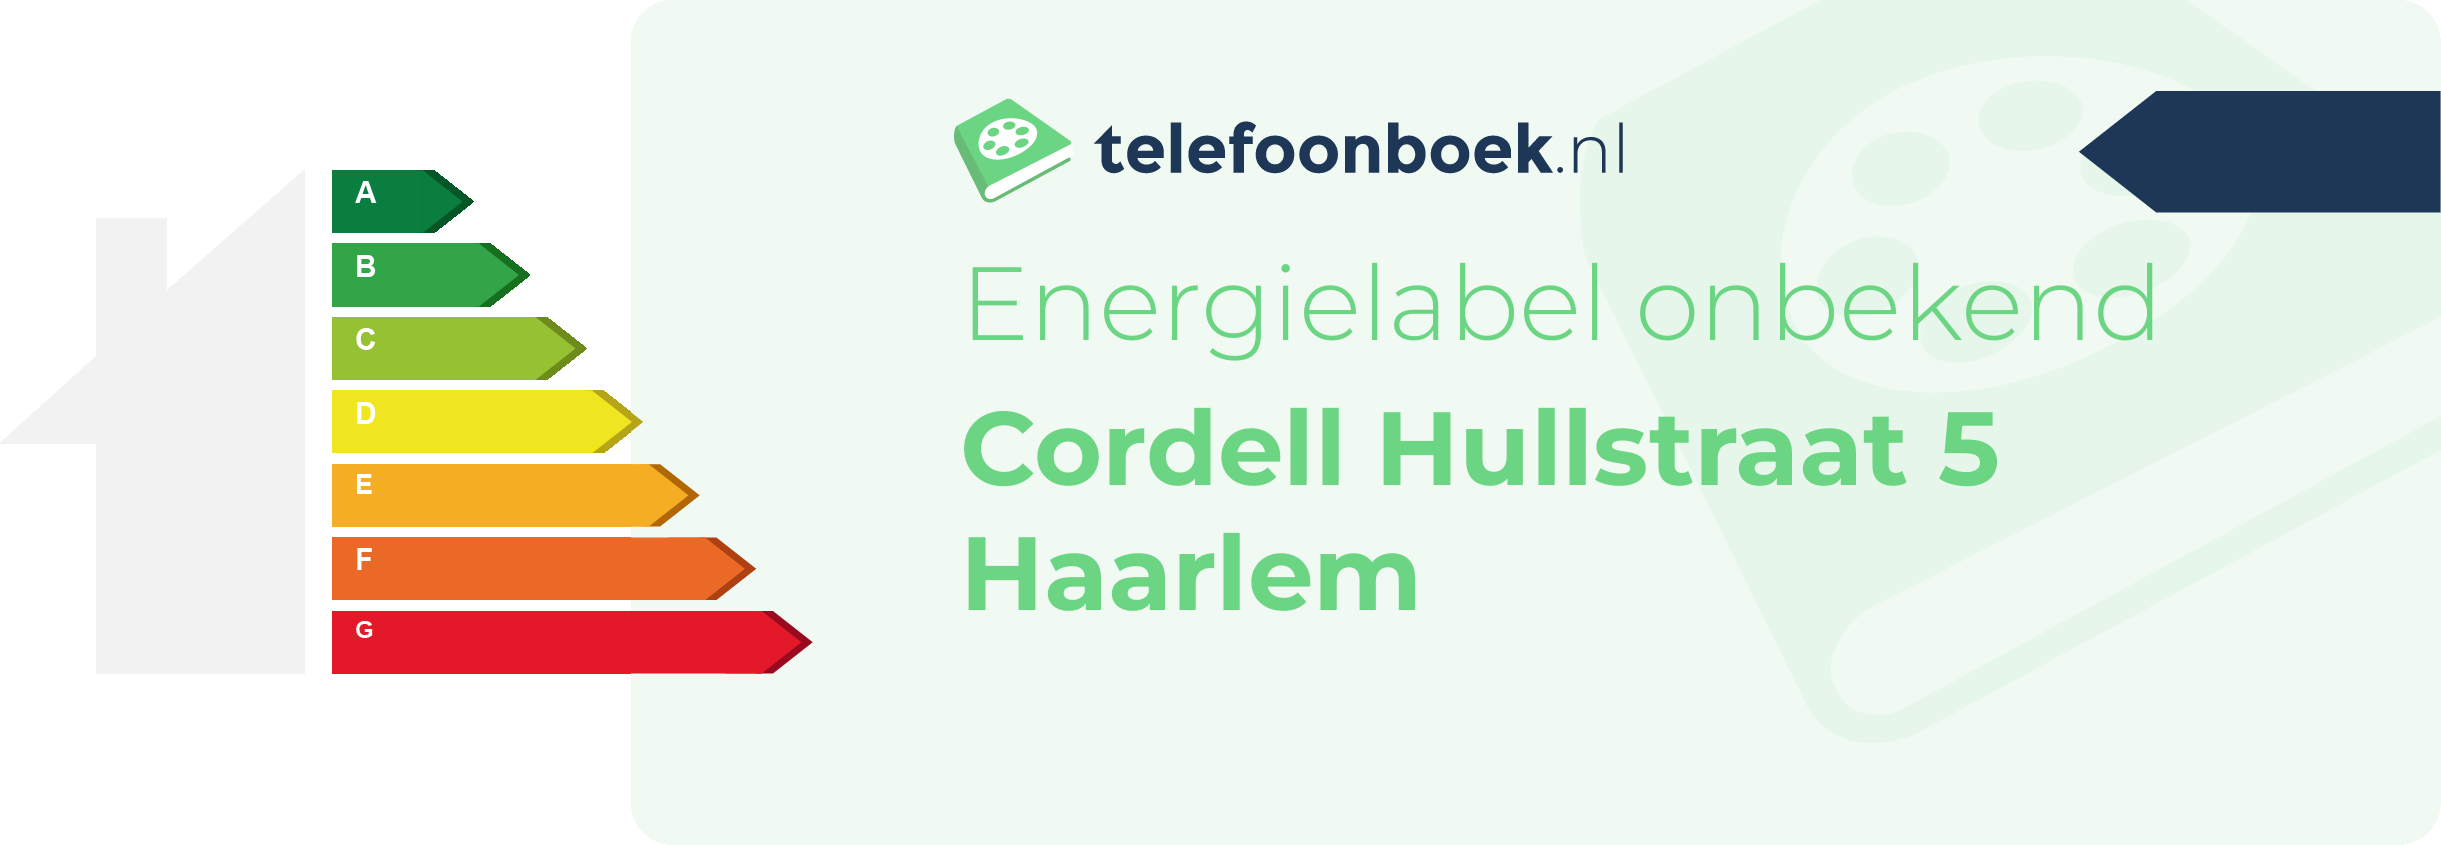 Energielabel Cordell Hullstraat 5 Haarlem